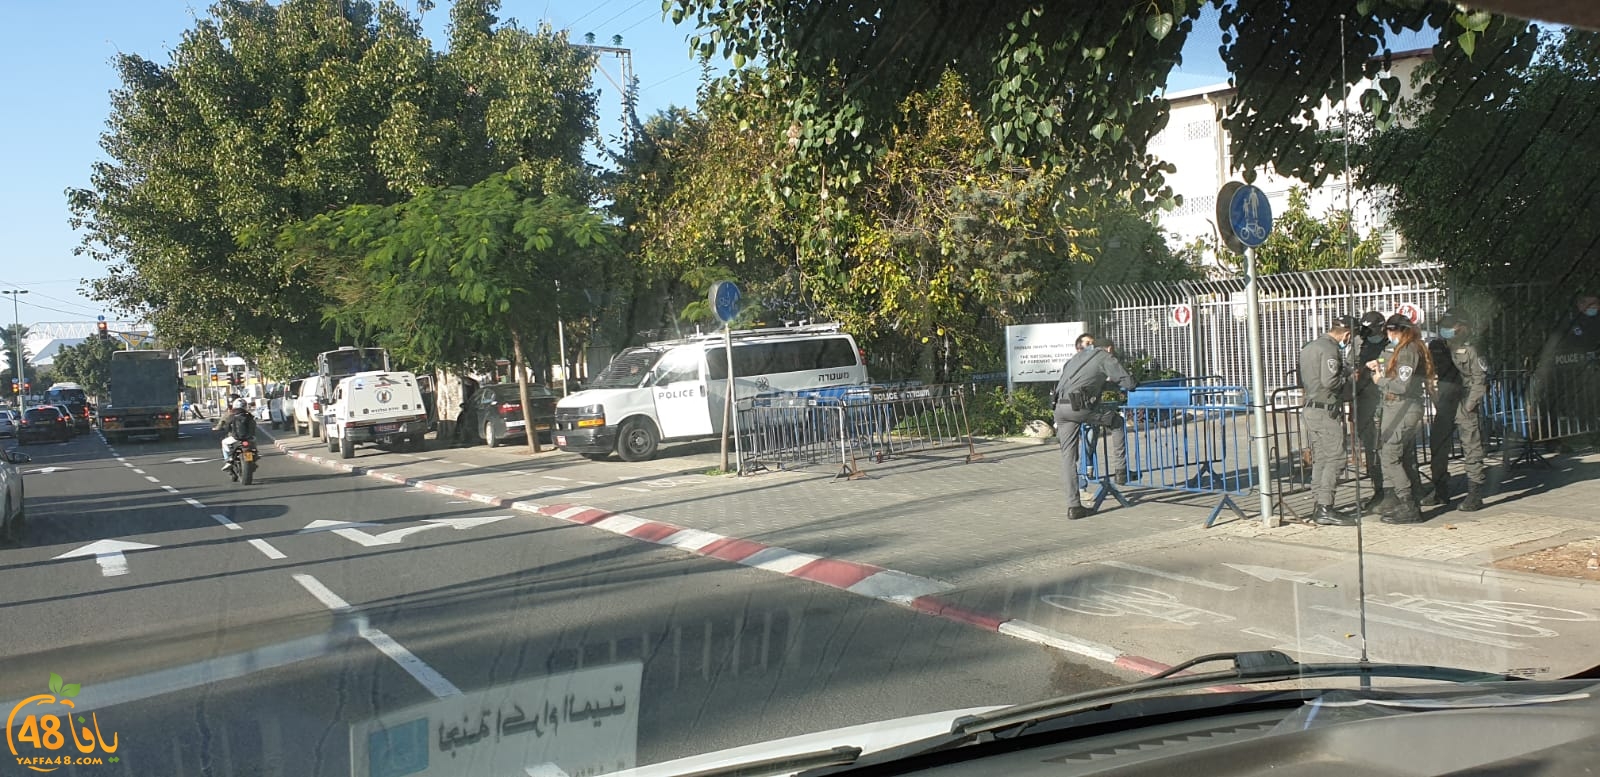 صور: الشرطة تُغلق محيط معهد ابو كبير الطبي وتدفع بتعزيزات للمكان 